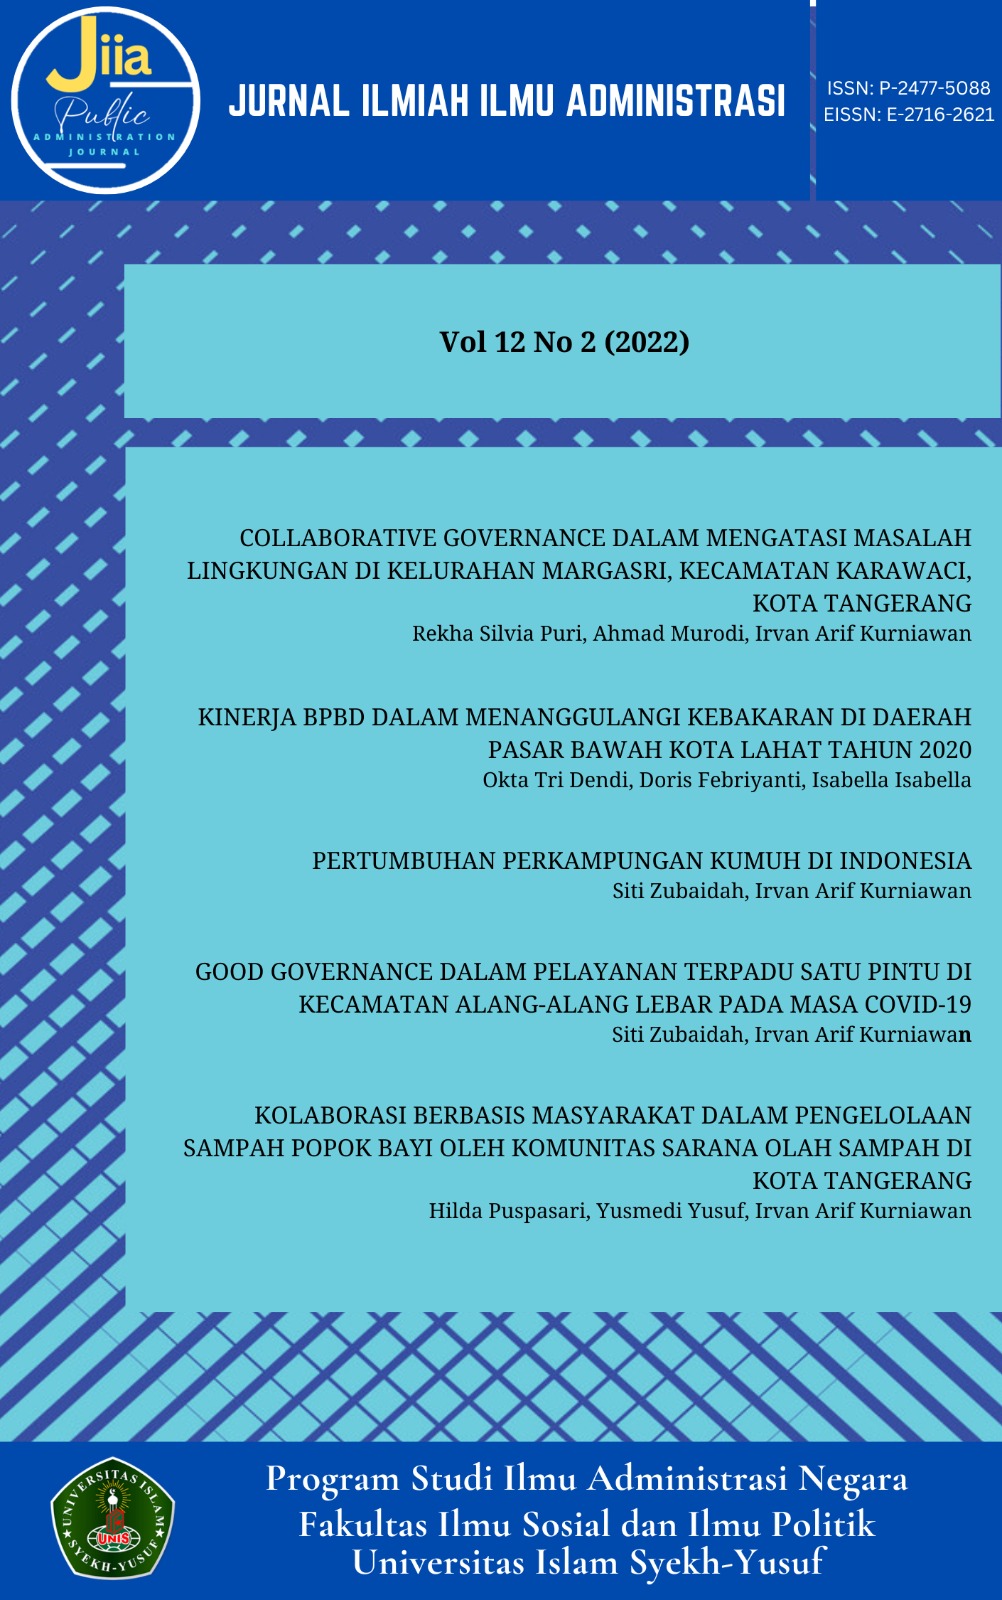 					Lihat Vol 12 No 2 (2022): Jurnal Ilmiah Ilmu Administrasi
				